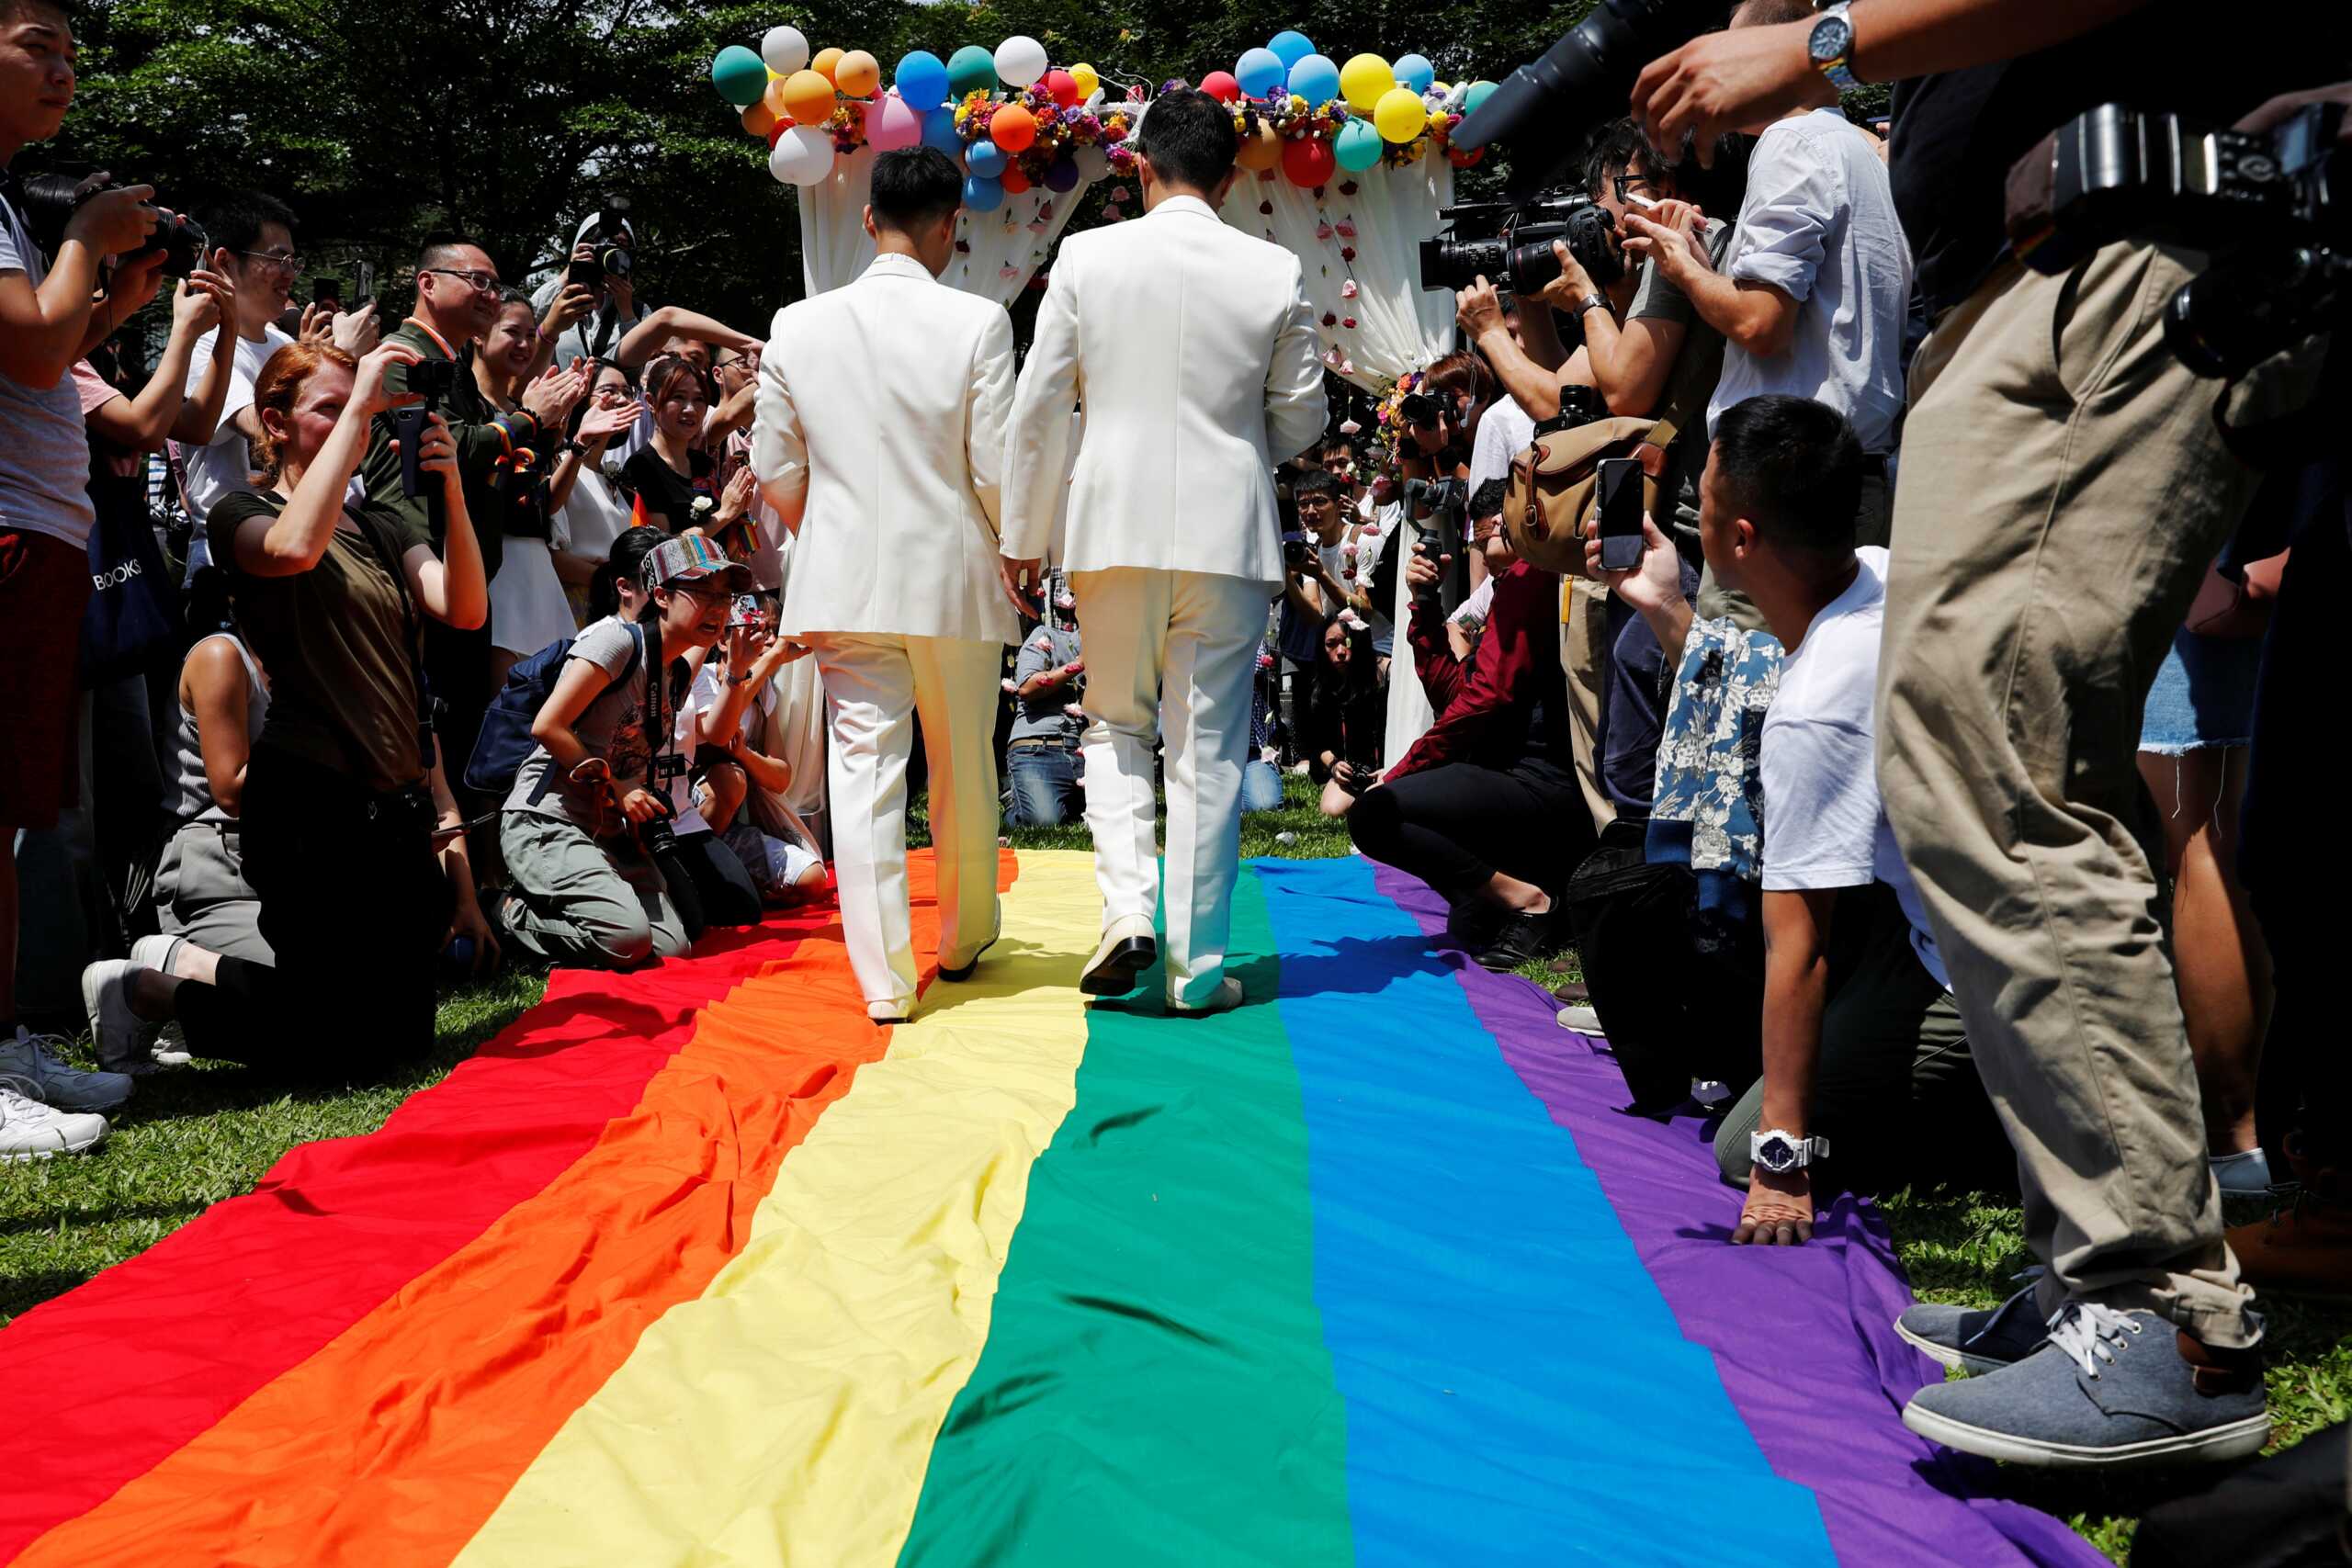 Γάμος ομόφυλων ζευγαριών: Κατατέθηκε και επίσημα αίτημα για ονομαστική ψηφοφορία στη Βουλή